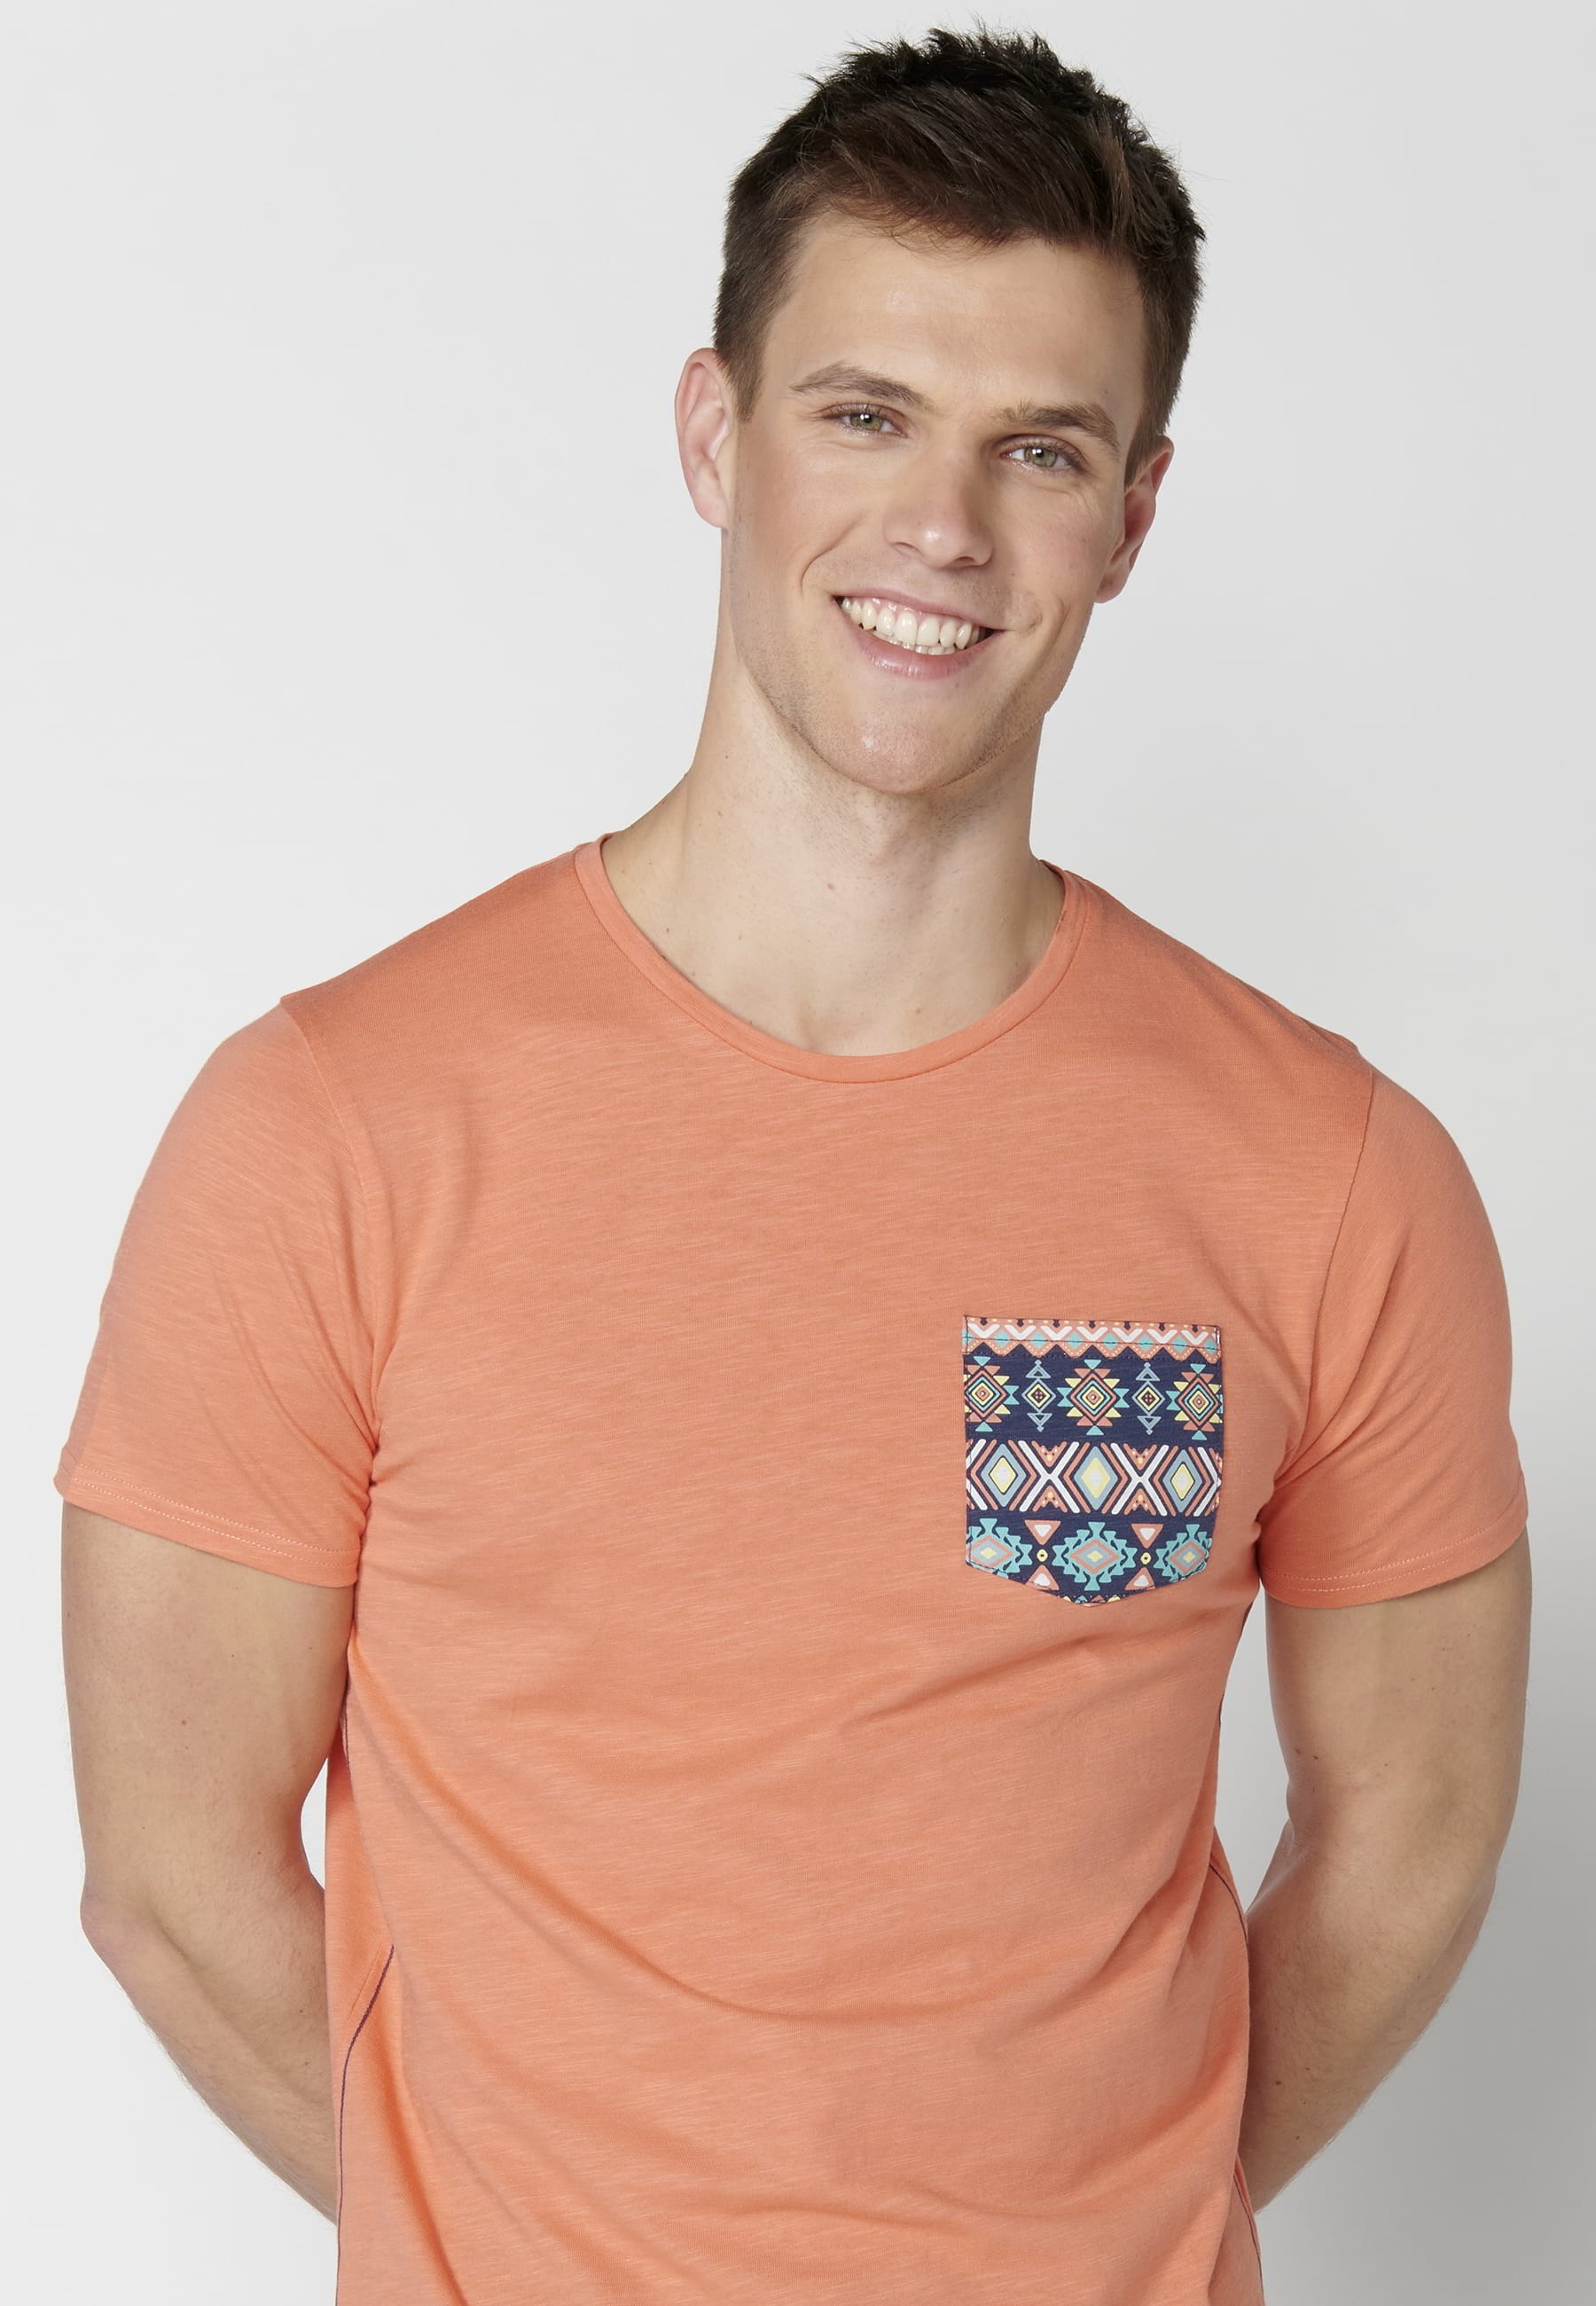 Men's Salmon Color Cotton Short Sleeve T-shirt